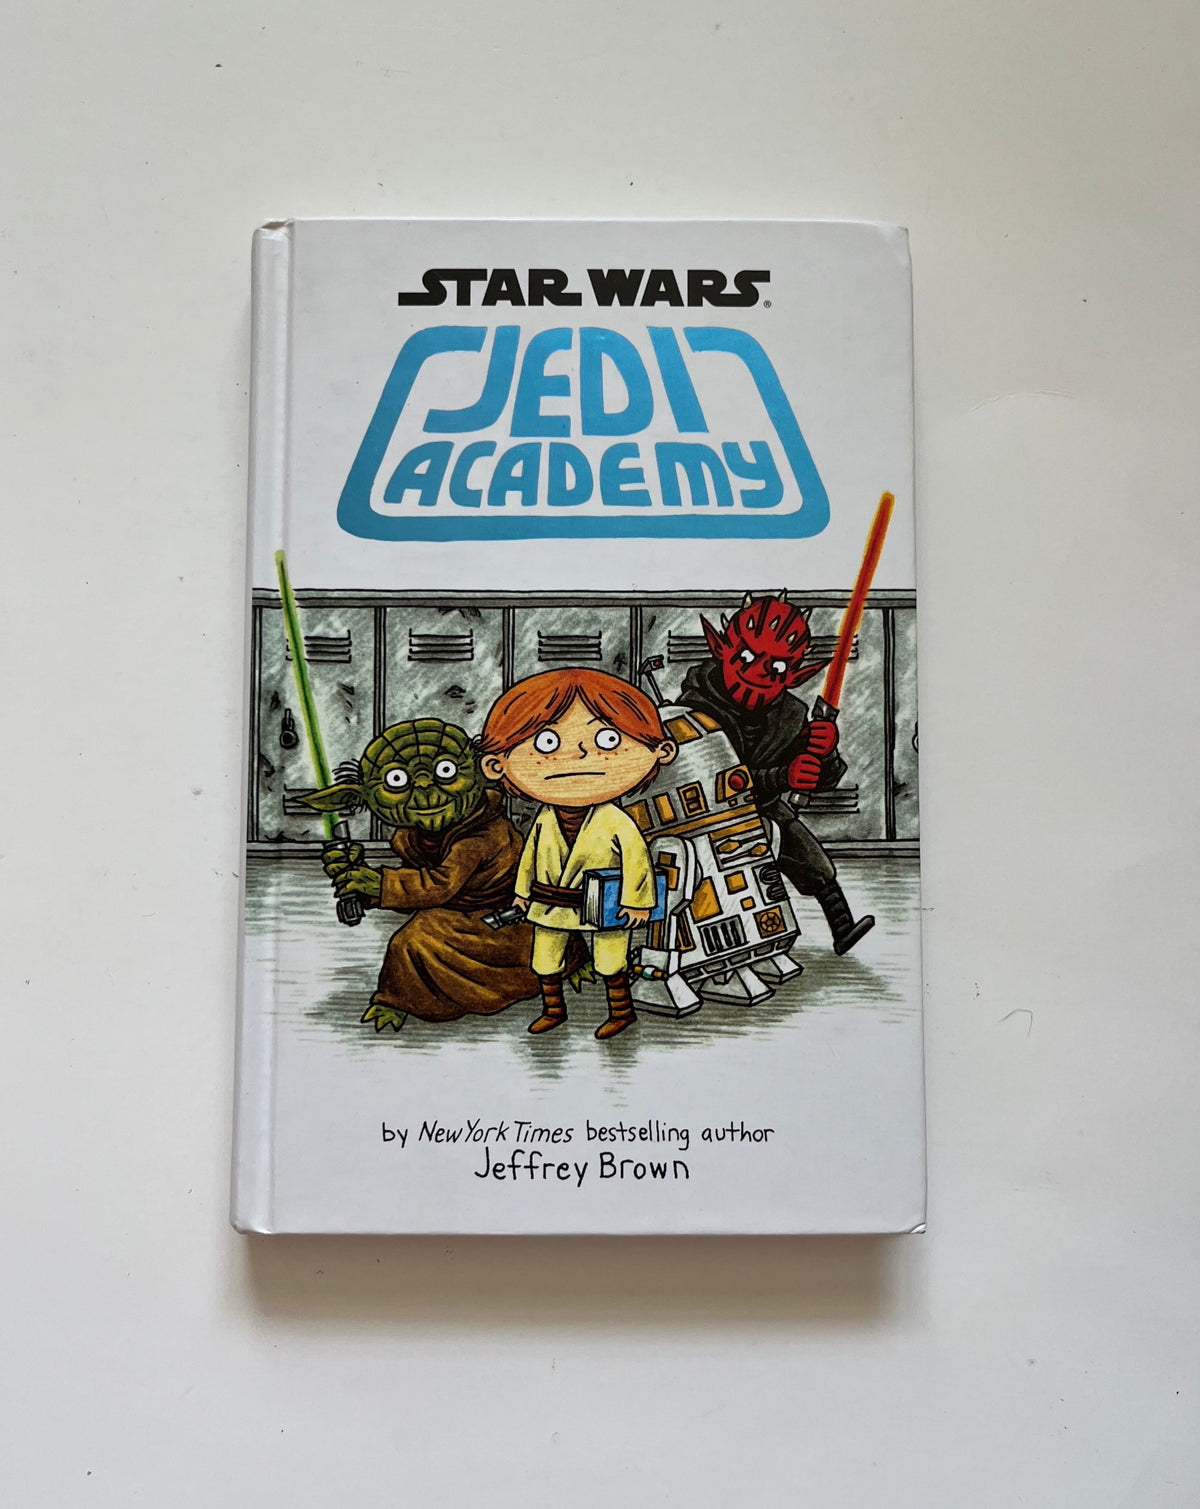 Star Wars: Jedi Academy by Jeffrey Brown